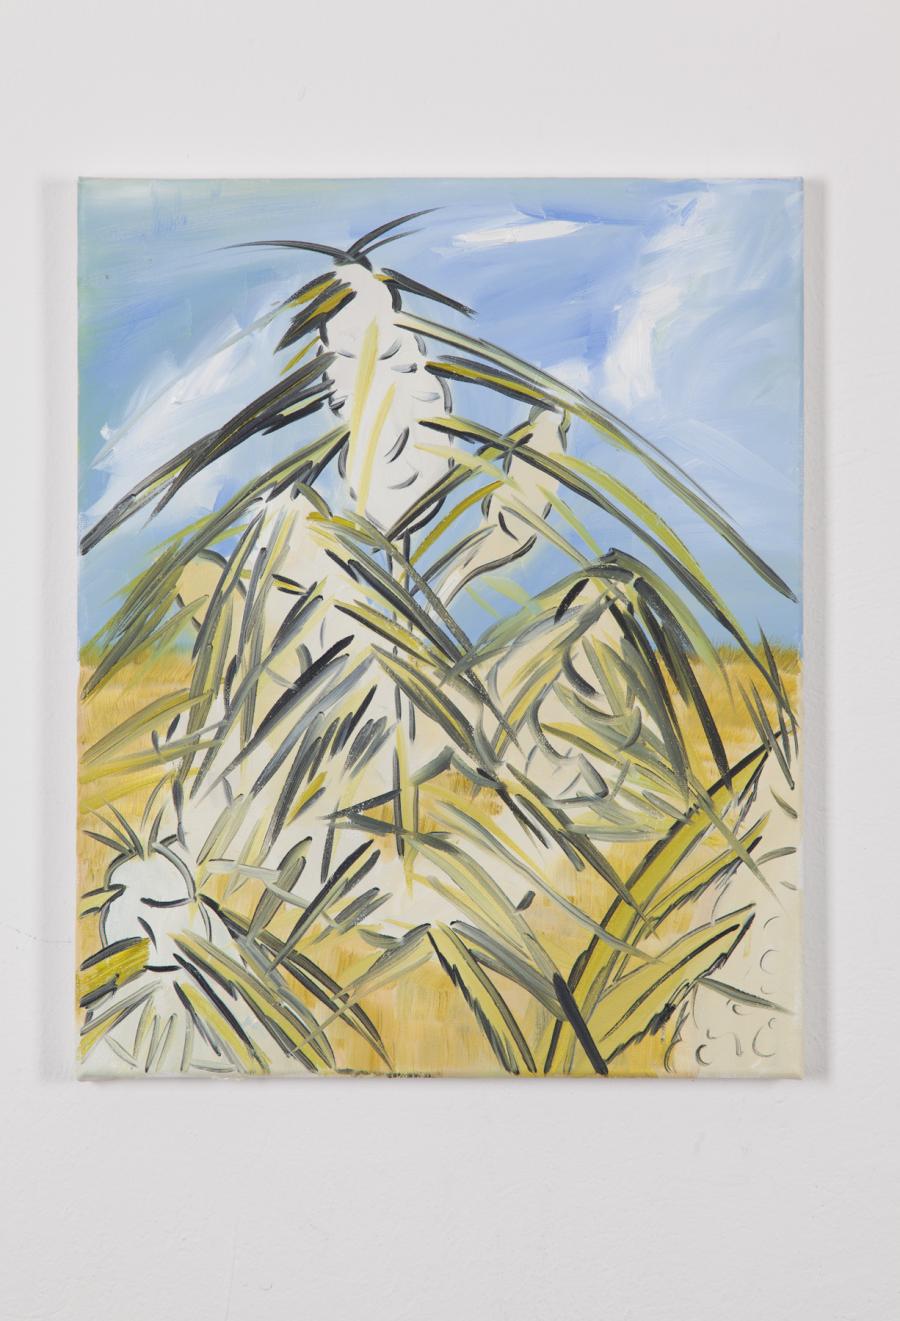 Alex Ruthner, oT, 50 x 40 cm, 2015